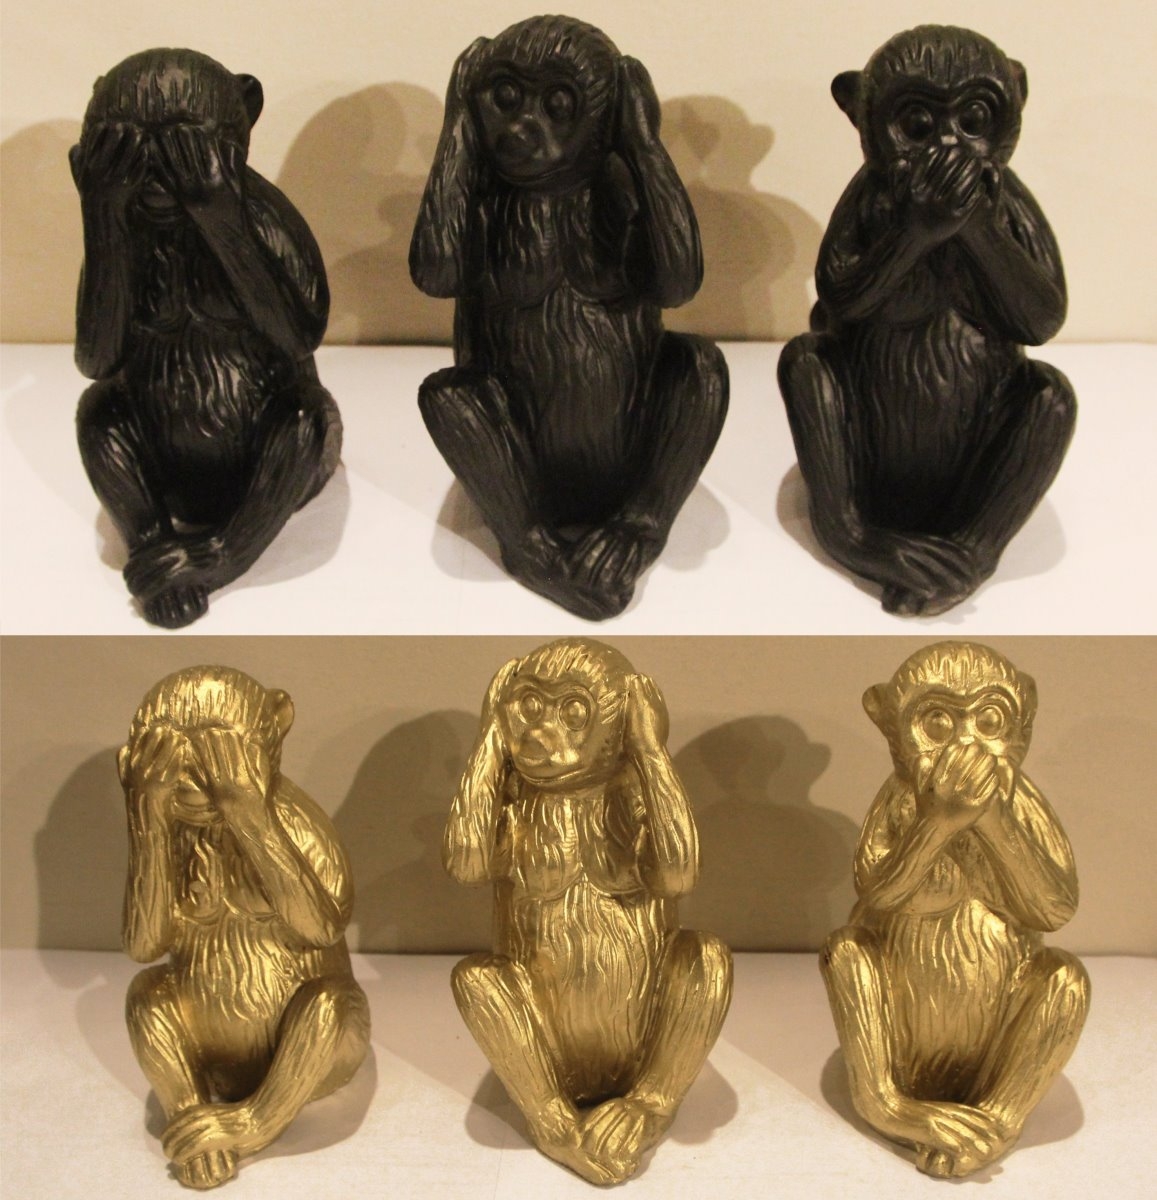 Deko Affen 3er Set nicht hren- nicht sehen- nicht sprechen 9x7-5x13cm aus Kunstharz goldfarben